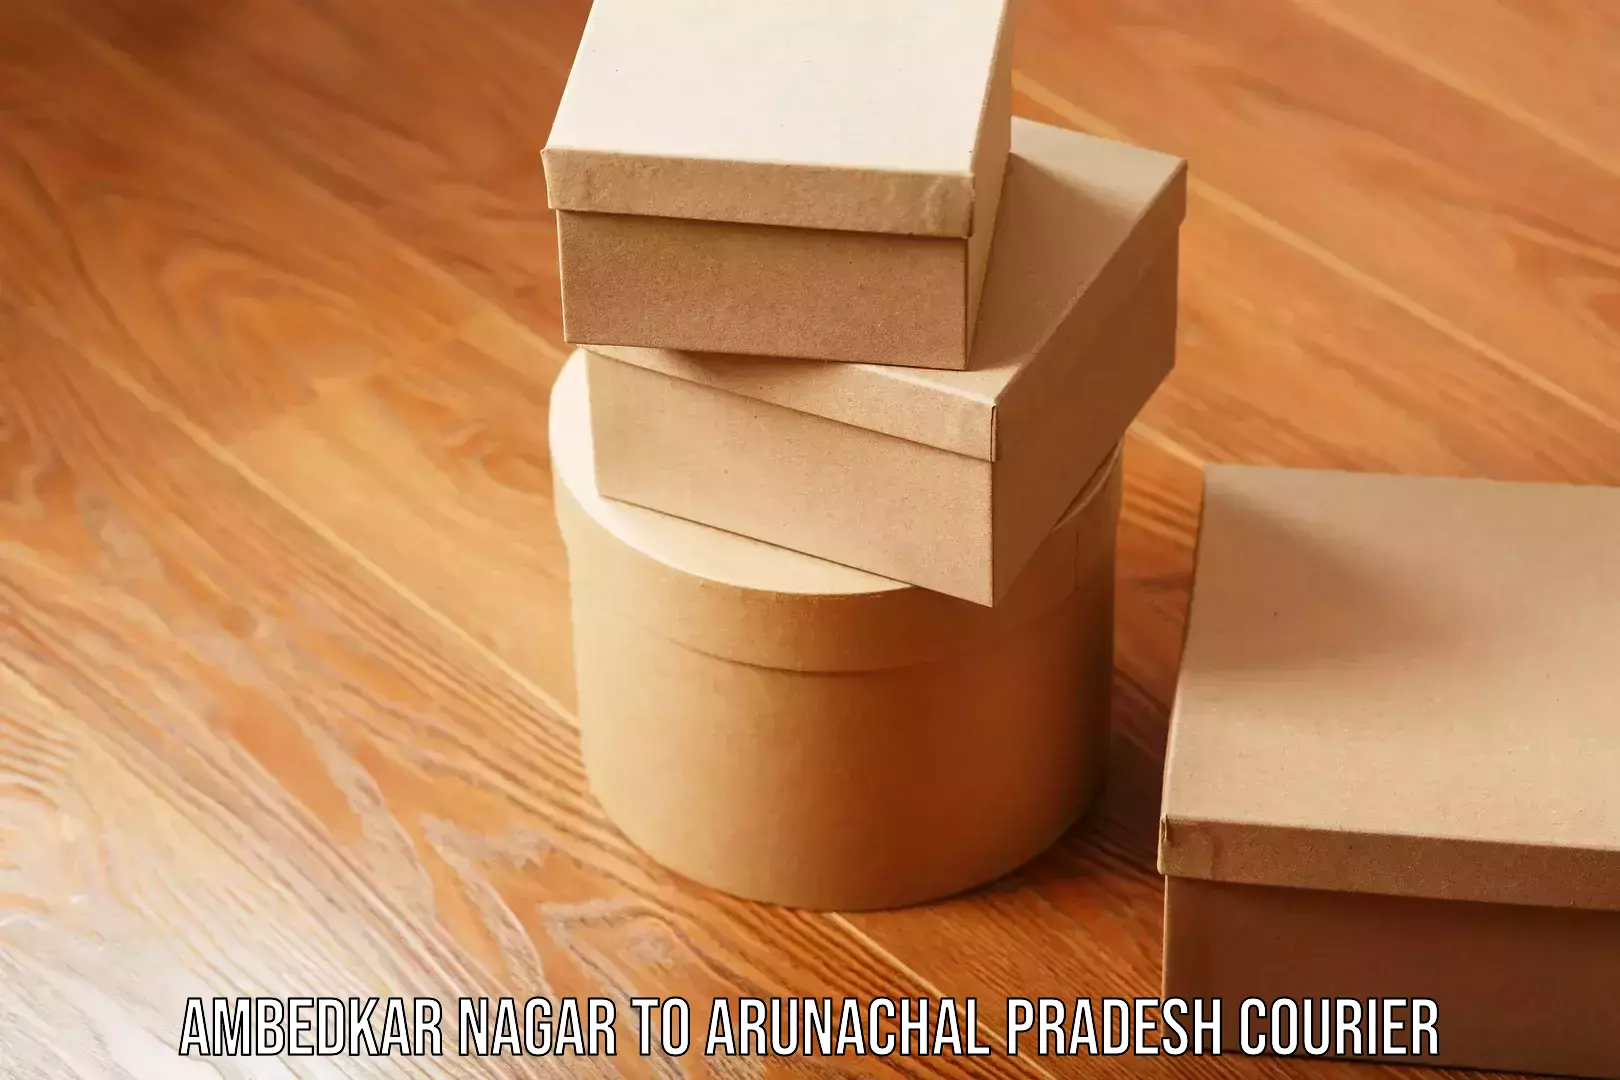 Nationwide courier service Ambedkar Nagar to Arunachal Pradesh